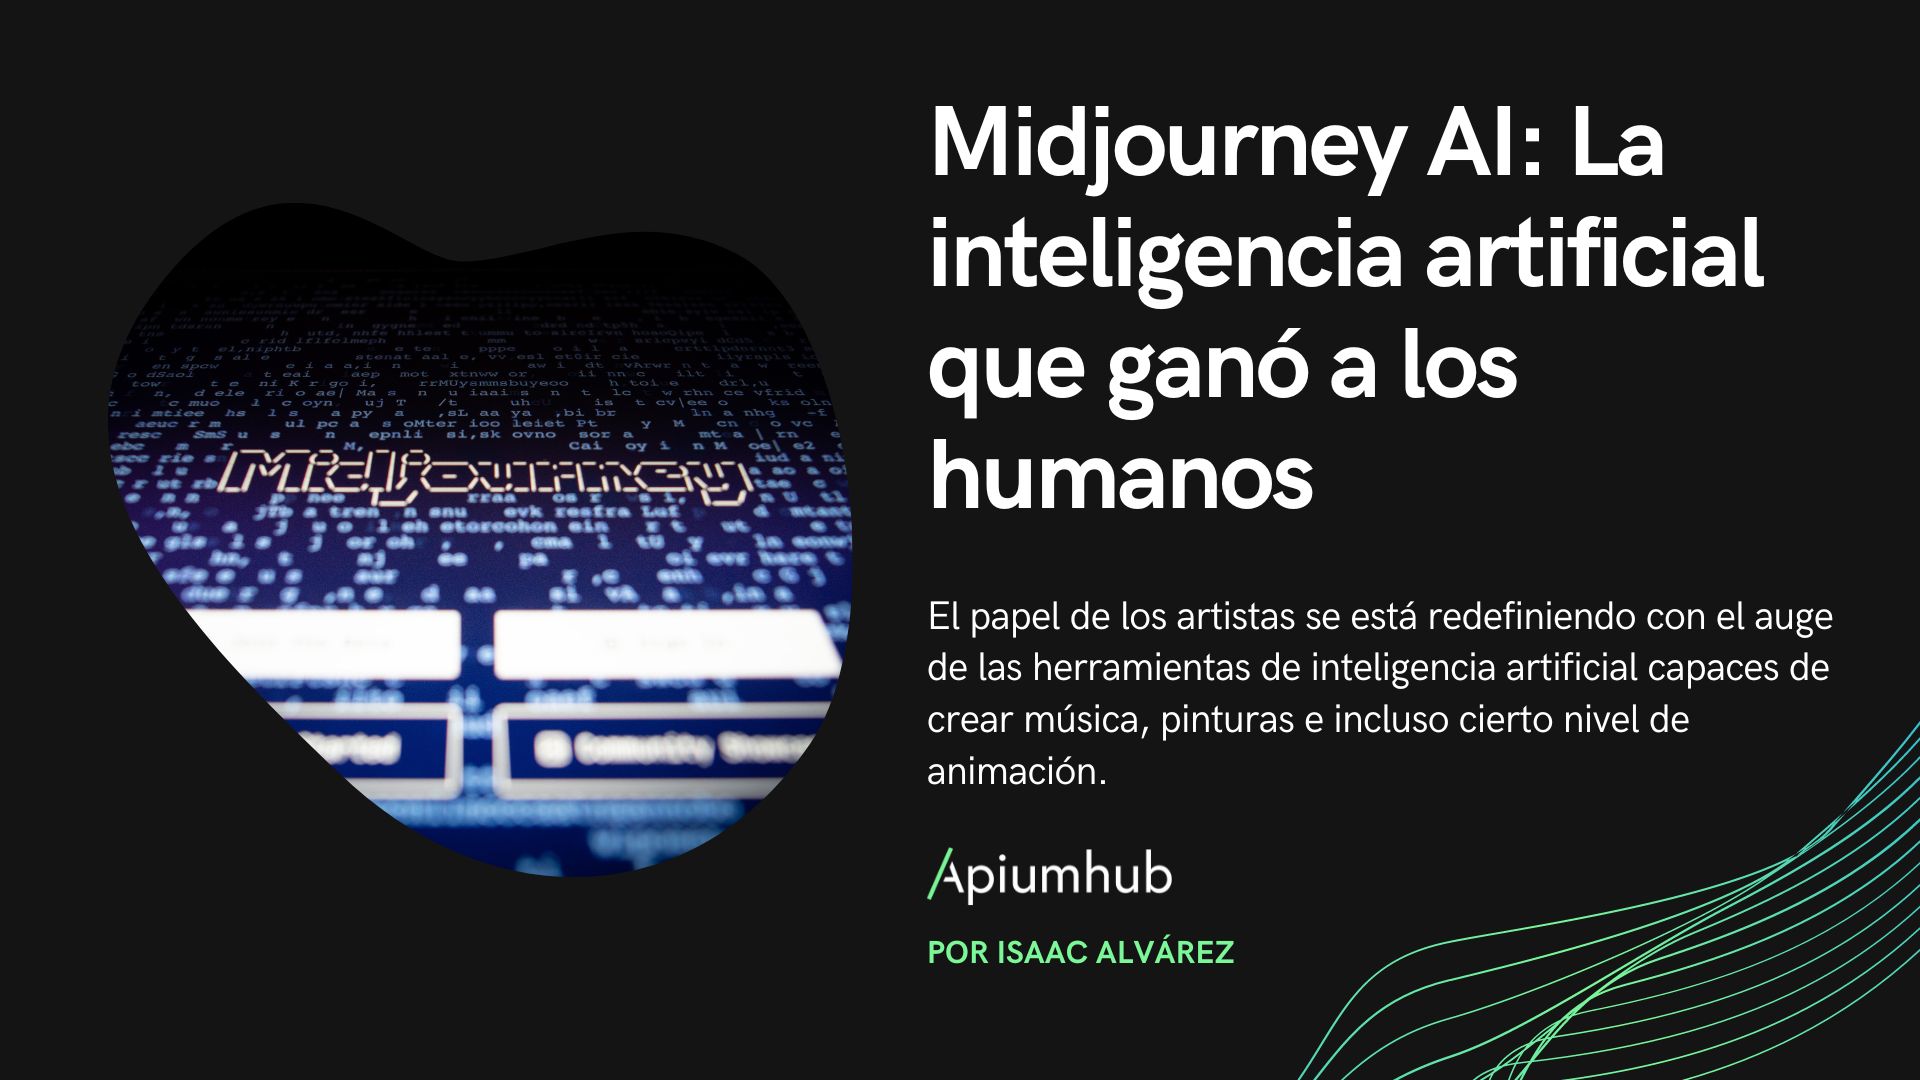 Midjourney AI: La inteligencia que ganó a los humanos